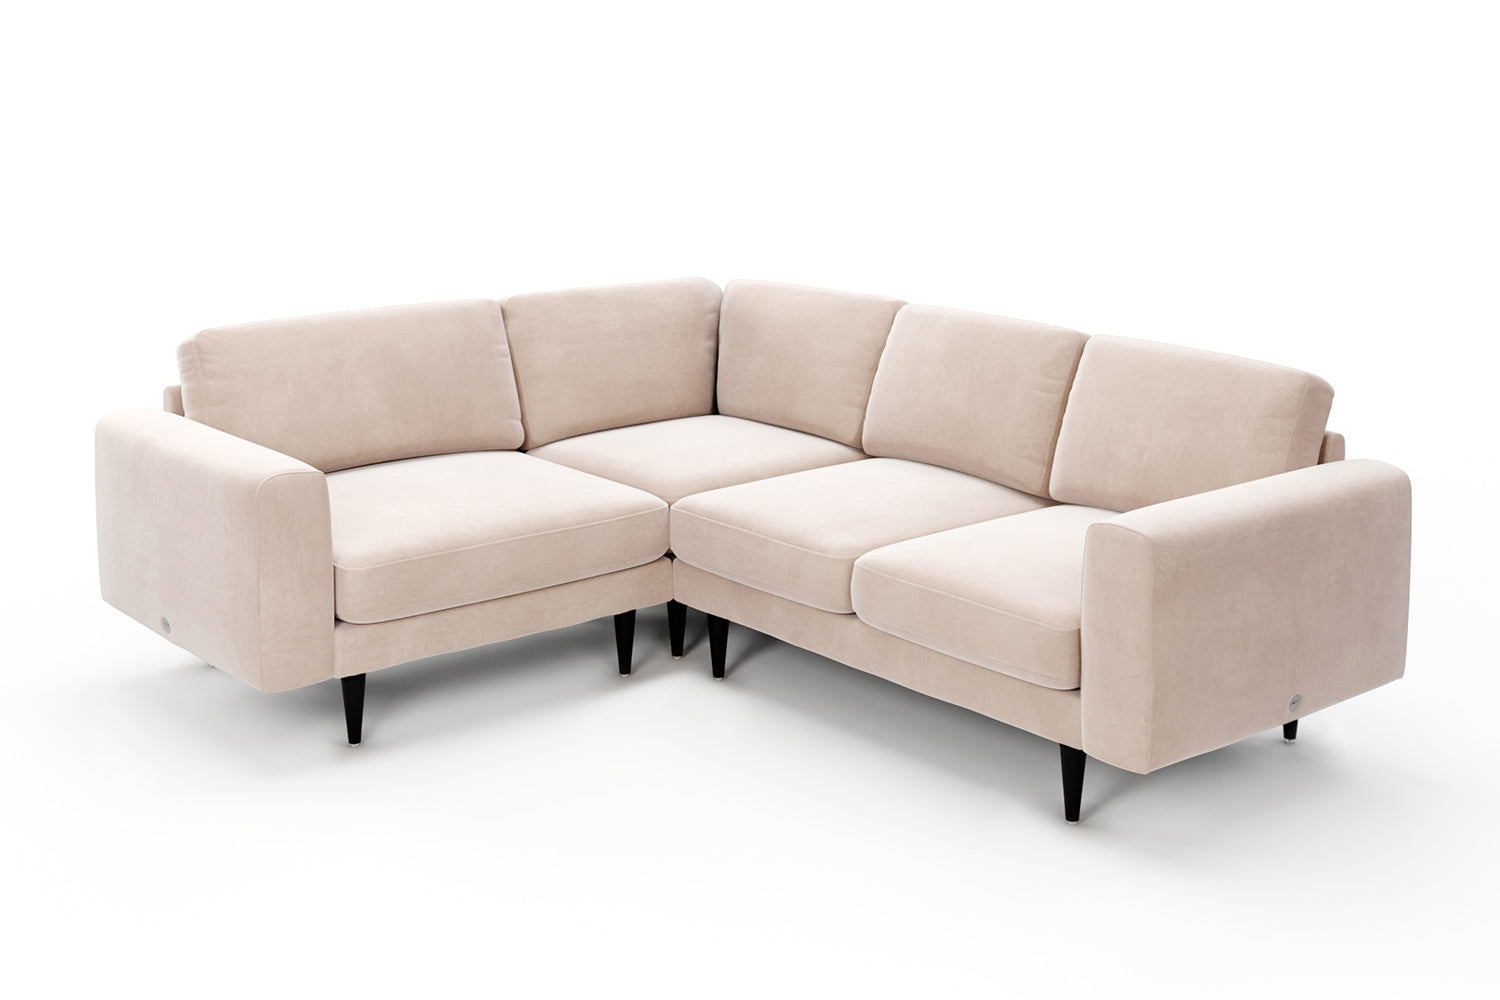 SNUG | The Big Chill Corner Sofa Small in Taupe